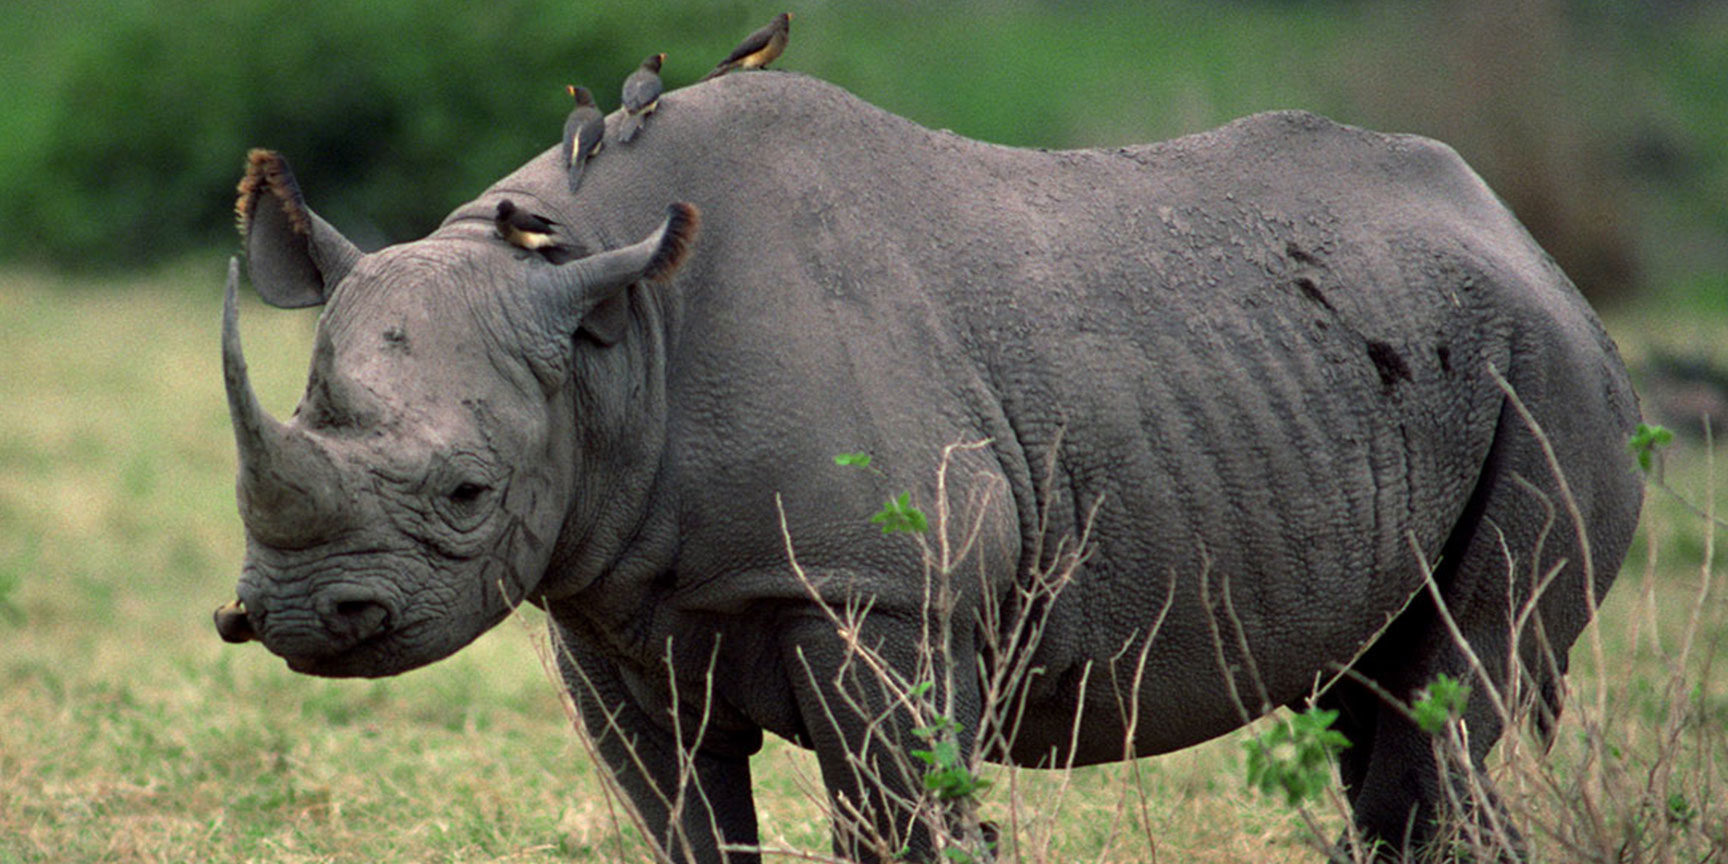 The Ziwa Rhino Sanctuary